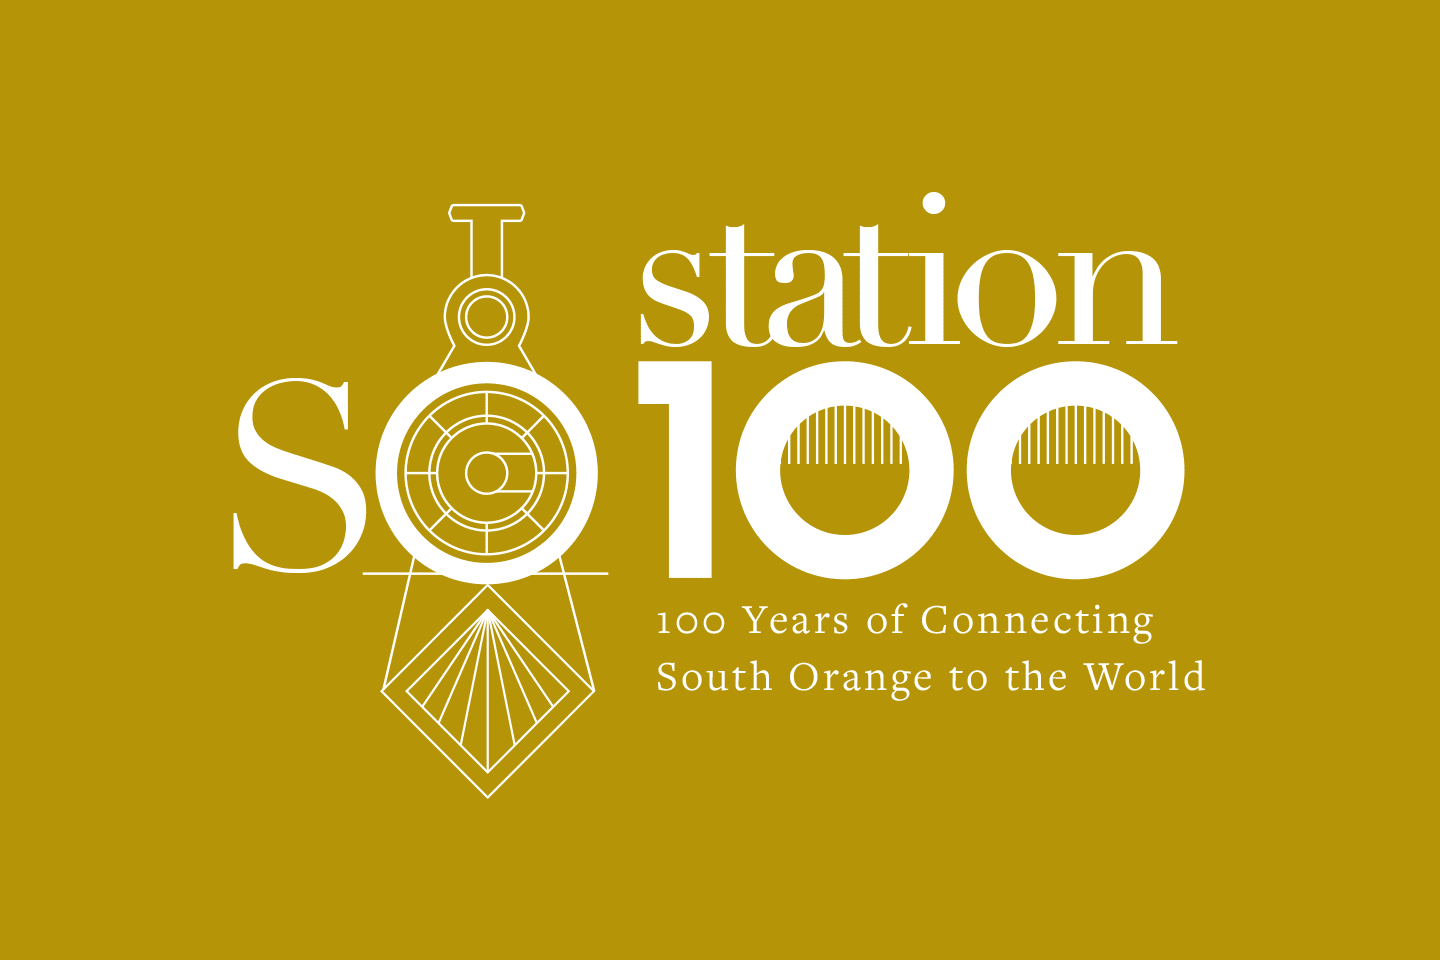 Century Station Logo - SO Station, Brand Development, Marketing, Digital